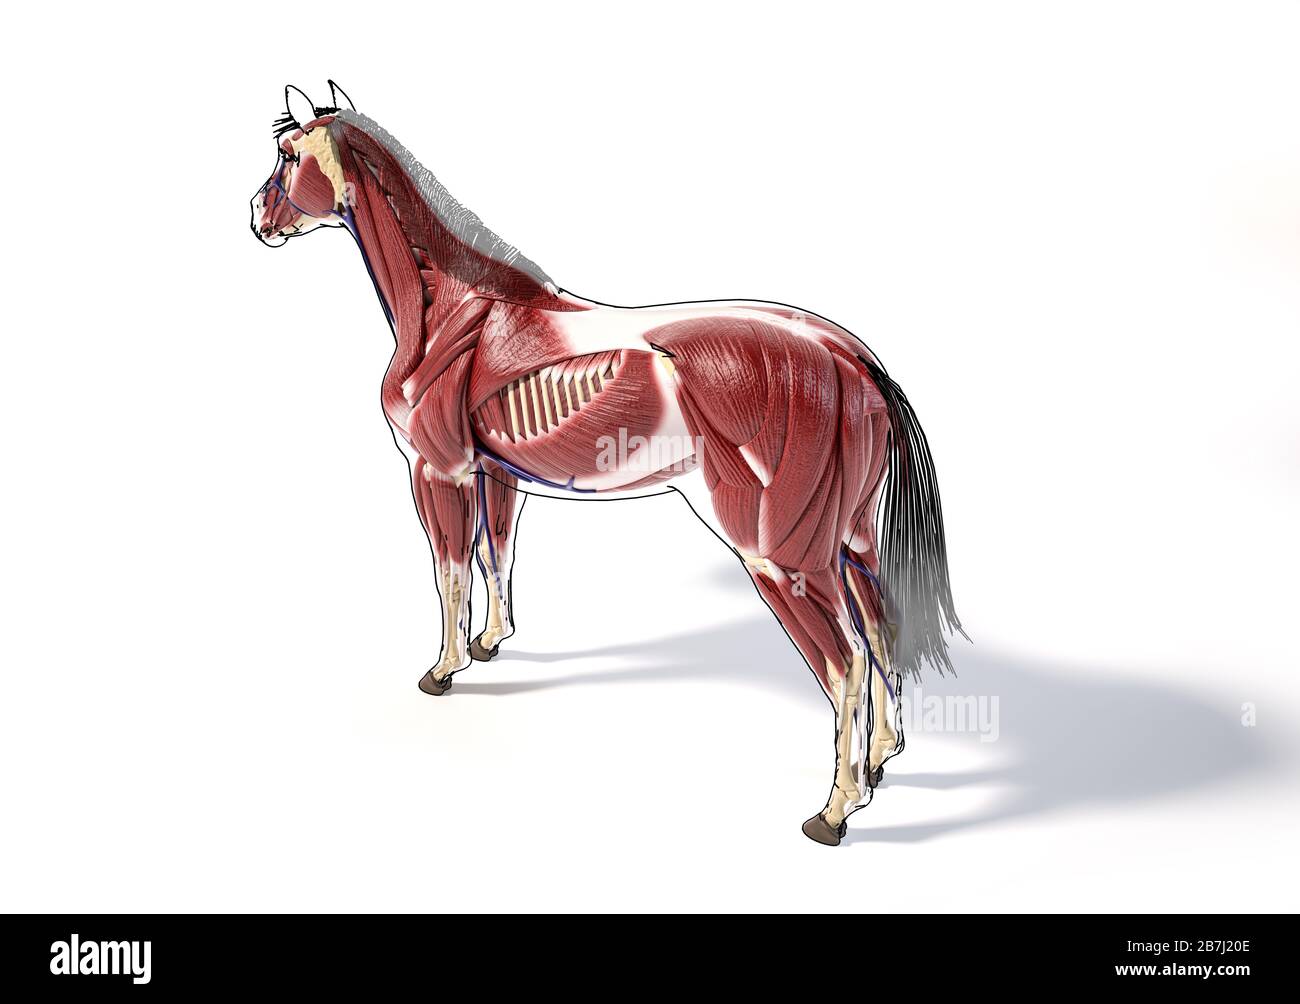 Pferdeanatomie. Muskuläres System mit schwarzem Umriss. Hinten - Vogelperspektive der Seitenauge auf weißem Hintergrund. Beschneidungspfad enthalten. Stockfoto